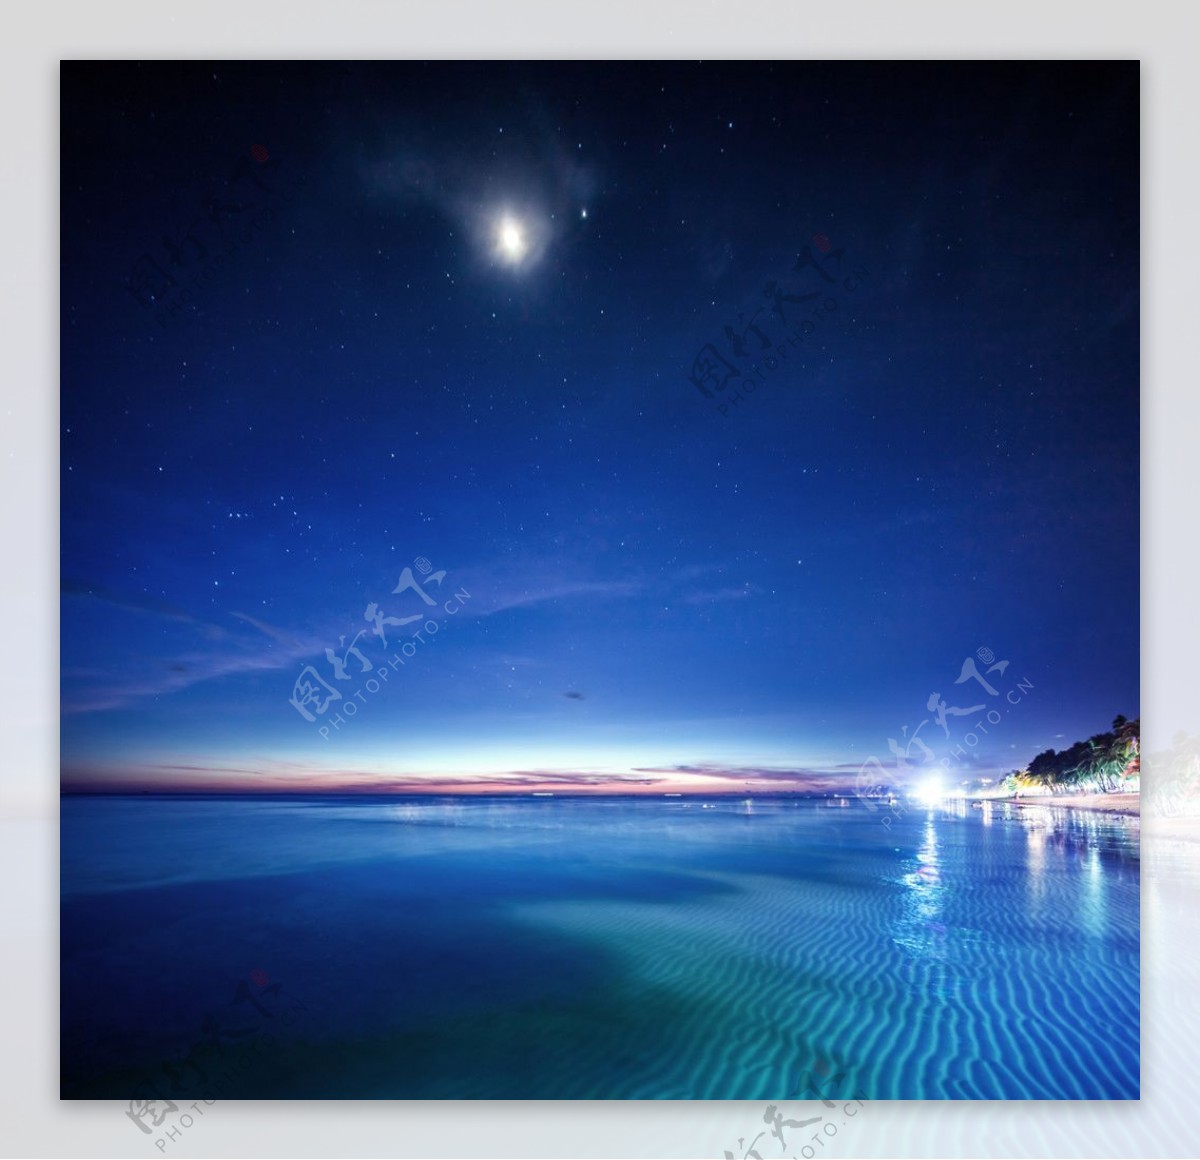 海沙滩夜景图片